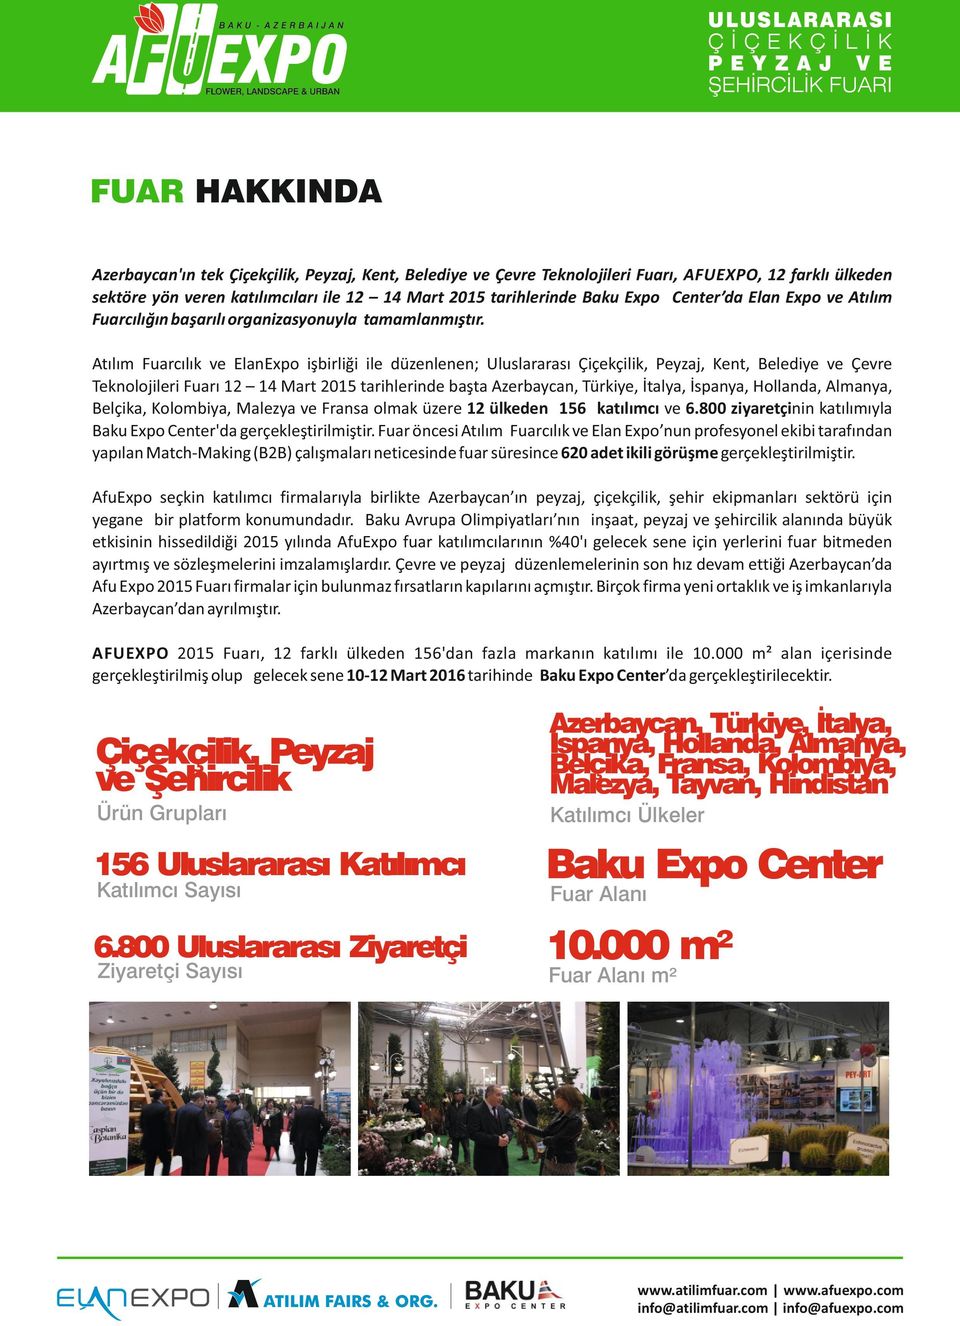 Atılım Fuarcılık ve ElanExpo işbirliği ile düzenlenen; Uluslararası Çiçekçilik, Peyzaj, Kent, Belediye ve Çevre Teknolojileri Fuarı 12 14 Mart 2015 tarihlerinde başta Azerbaycan, Türkiye, İtalya,